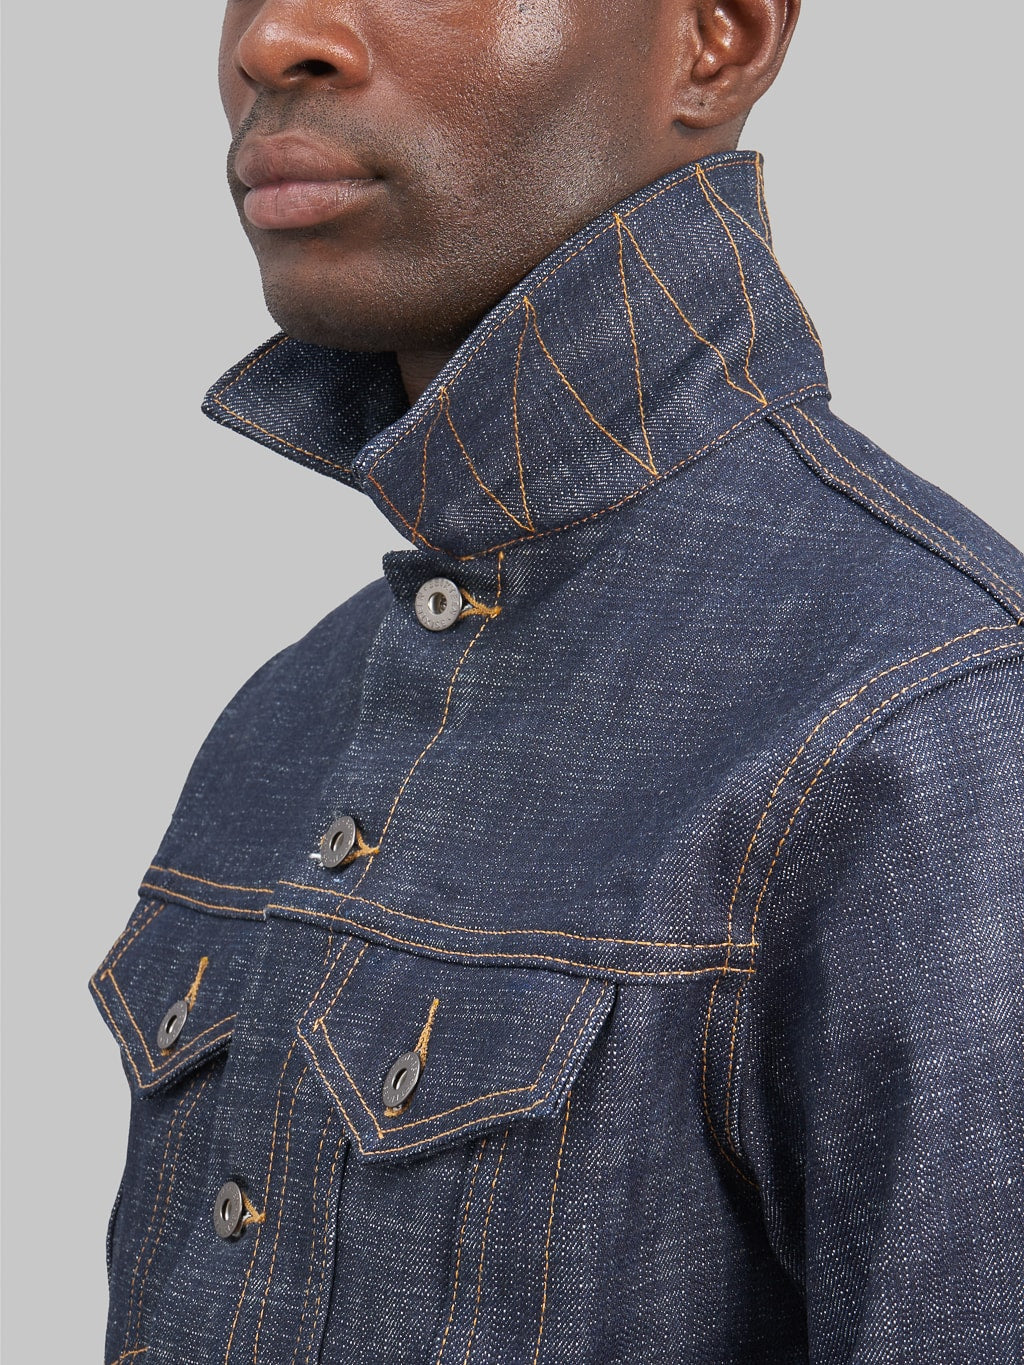 3sixteen 20th Anniversary Natural Indigo Type 3s Denim Jacket  collar details